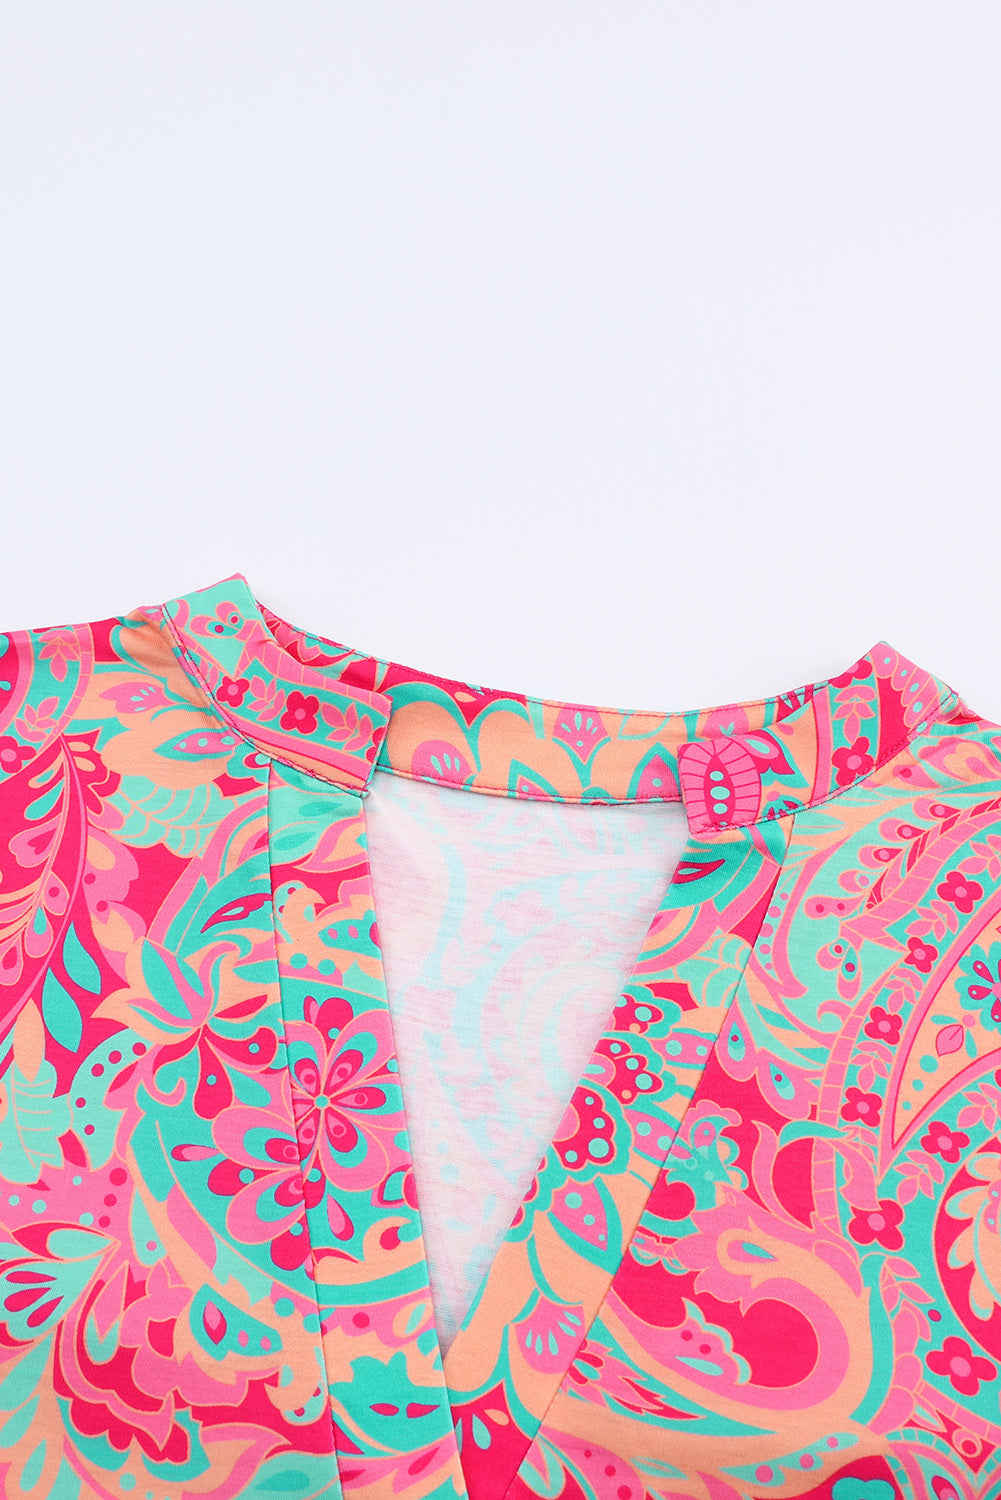 Rožnata bluza z zavihki in zavihki v velikosti z v-izrezom in velikim potiskom paisleyja